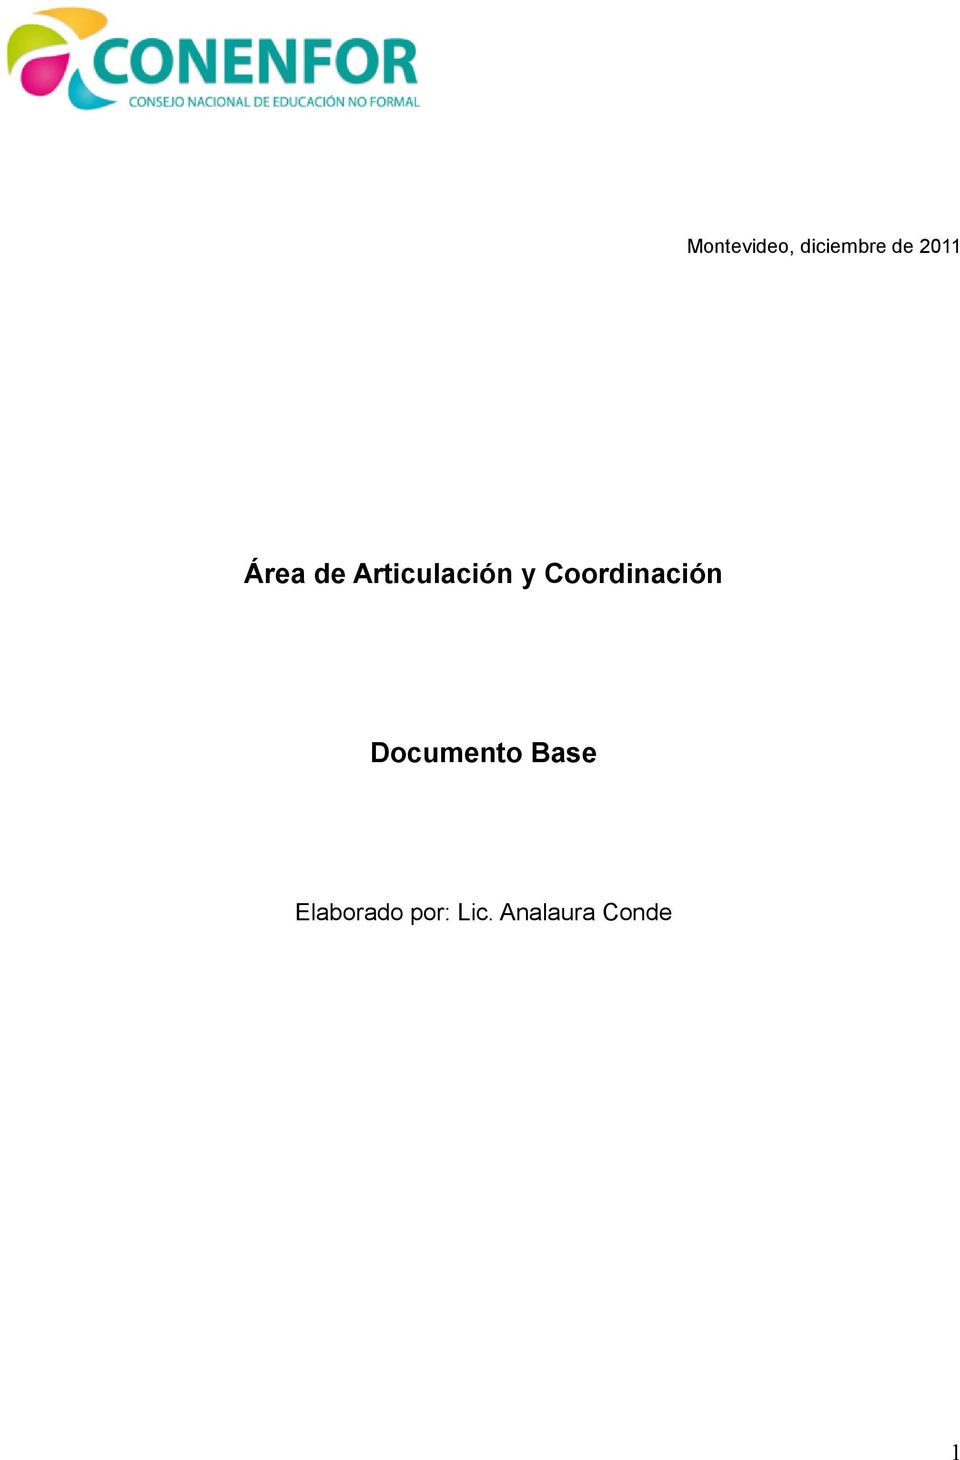 Coordinación Documento Base